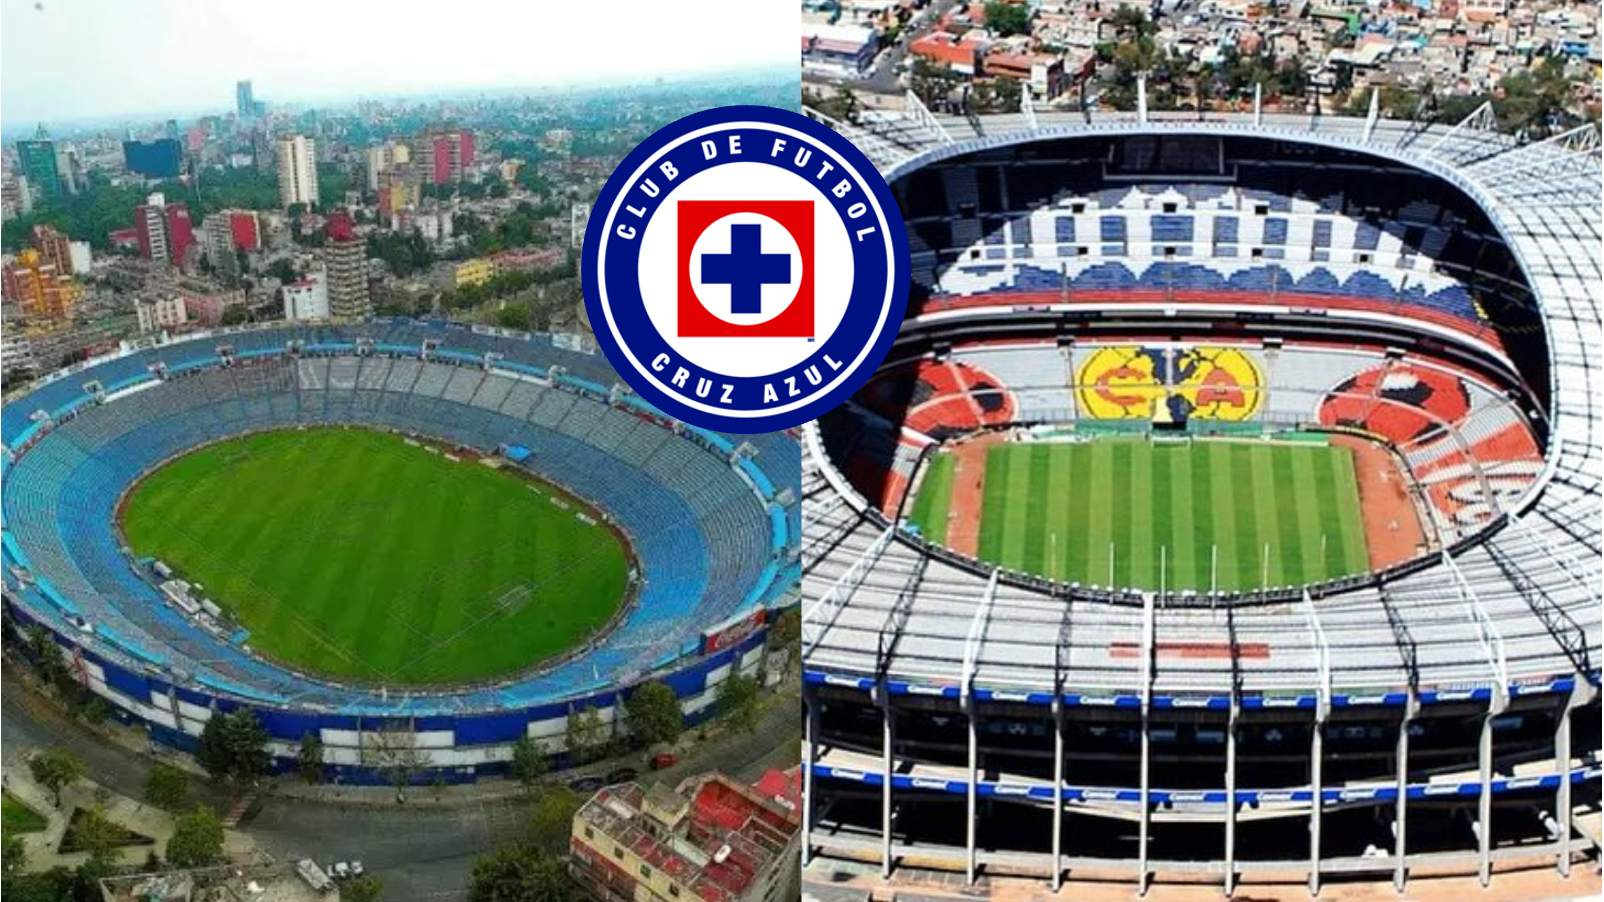 El estadio donde Cruz Azul jugará la 1era final, tras lograr meterse al partido más importante